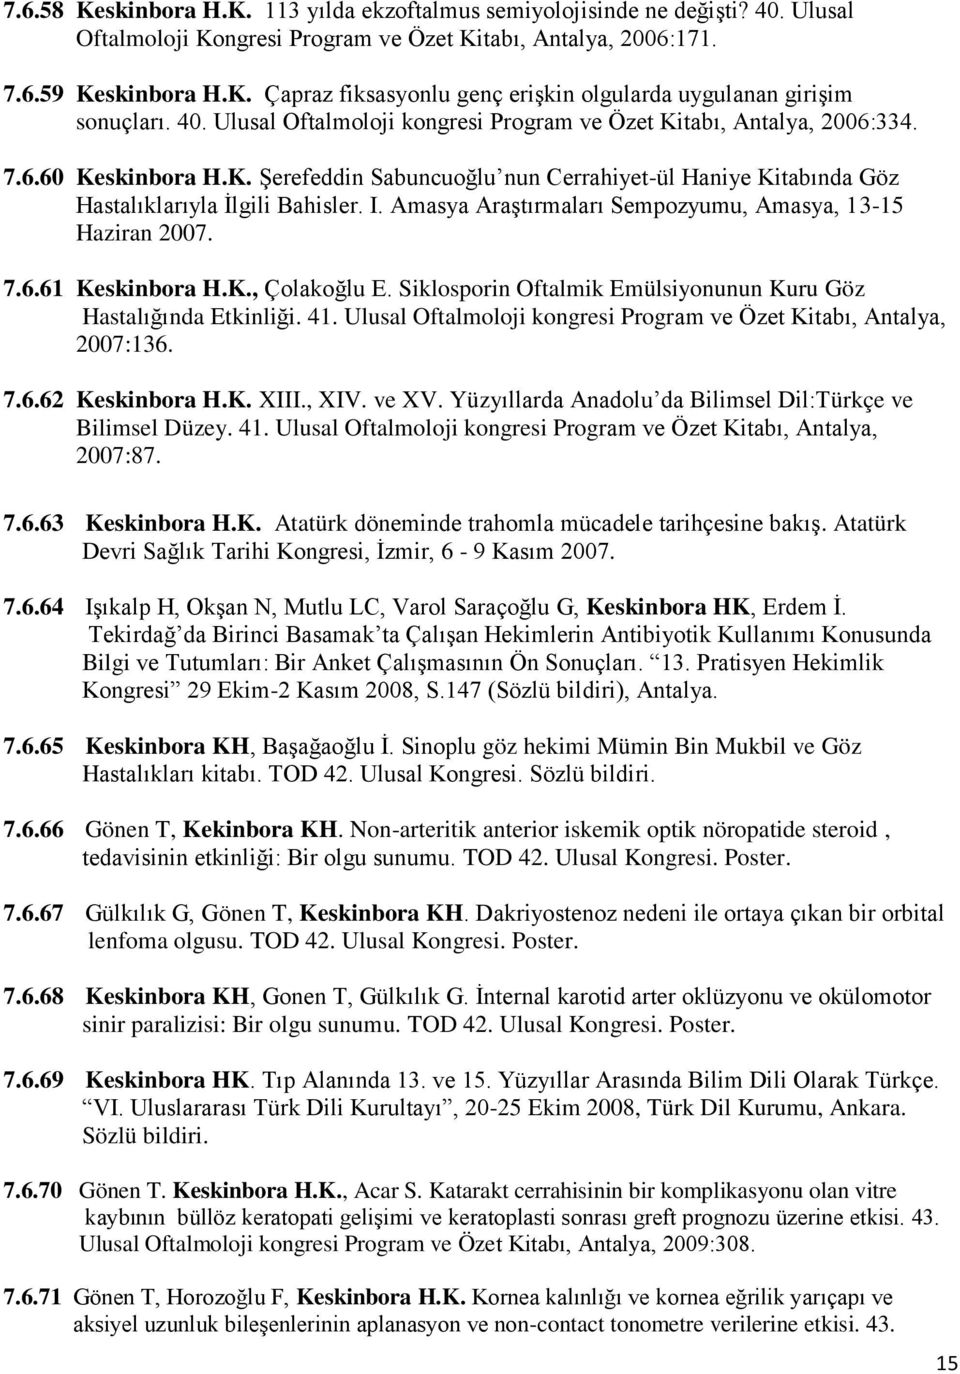 Amasya Araştırmaları Sempozyumu, Amasya, 13-15 Haziran 2007. 7.6.61 Keskinbora H.K., Çolakoğlu E. Siklosporin Oftalmik Emülsiyonunun Kuru Göz Hastalığında Etkinliği. 41.